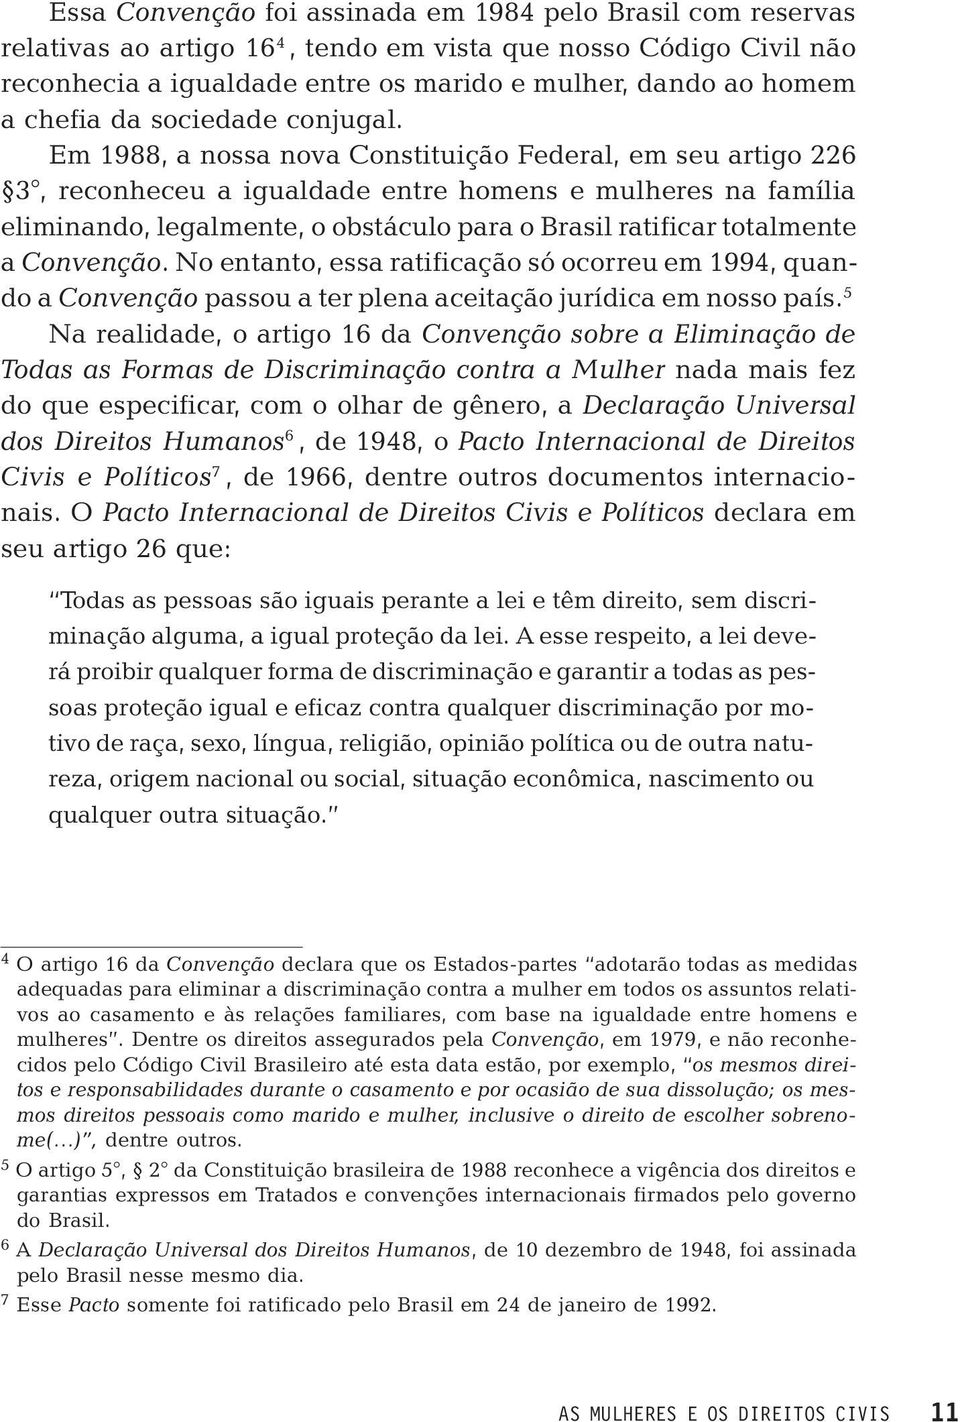 Em 1988, a nossa nova Constituição Federal, em seu artigo 226 3, reconheceu a igualdade entre homens e mulheres na família eliminando, legalmente, o obstáculo para o Brasil ratificar totalmente a